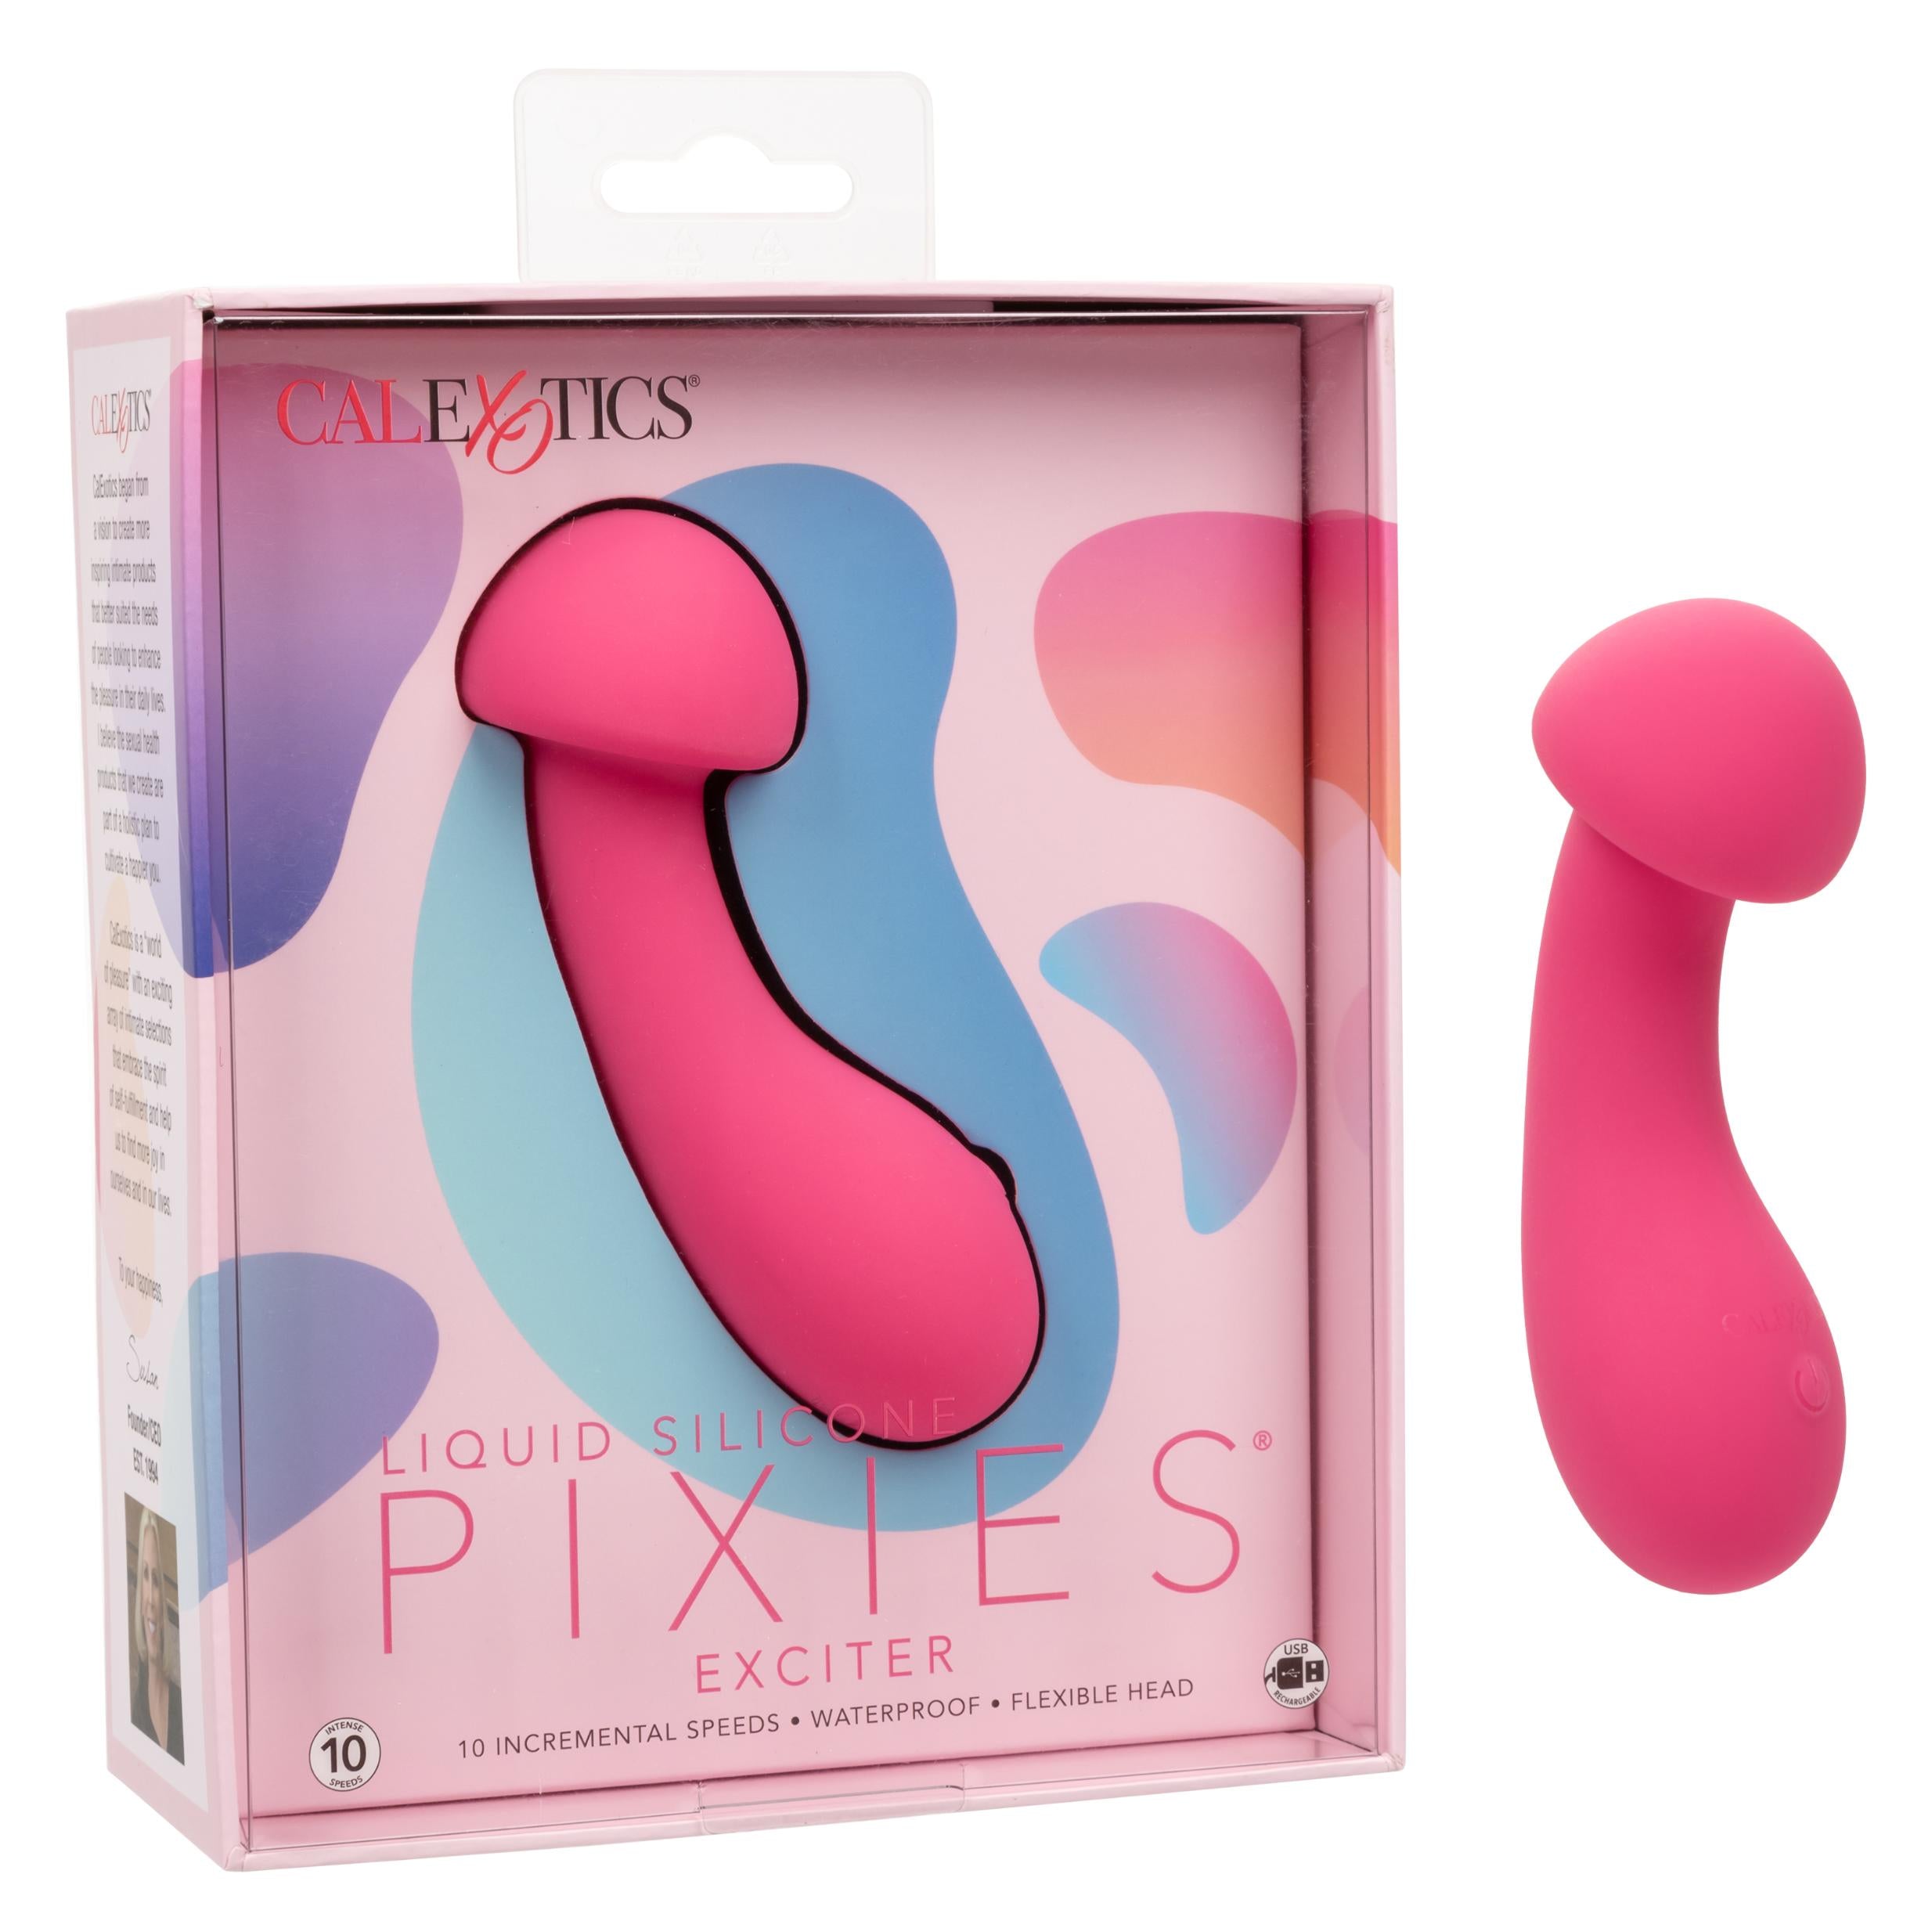 Liquid Silicone Pixies Exciter Vibrator - Pink